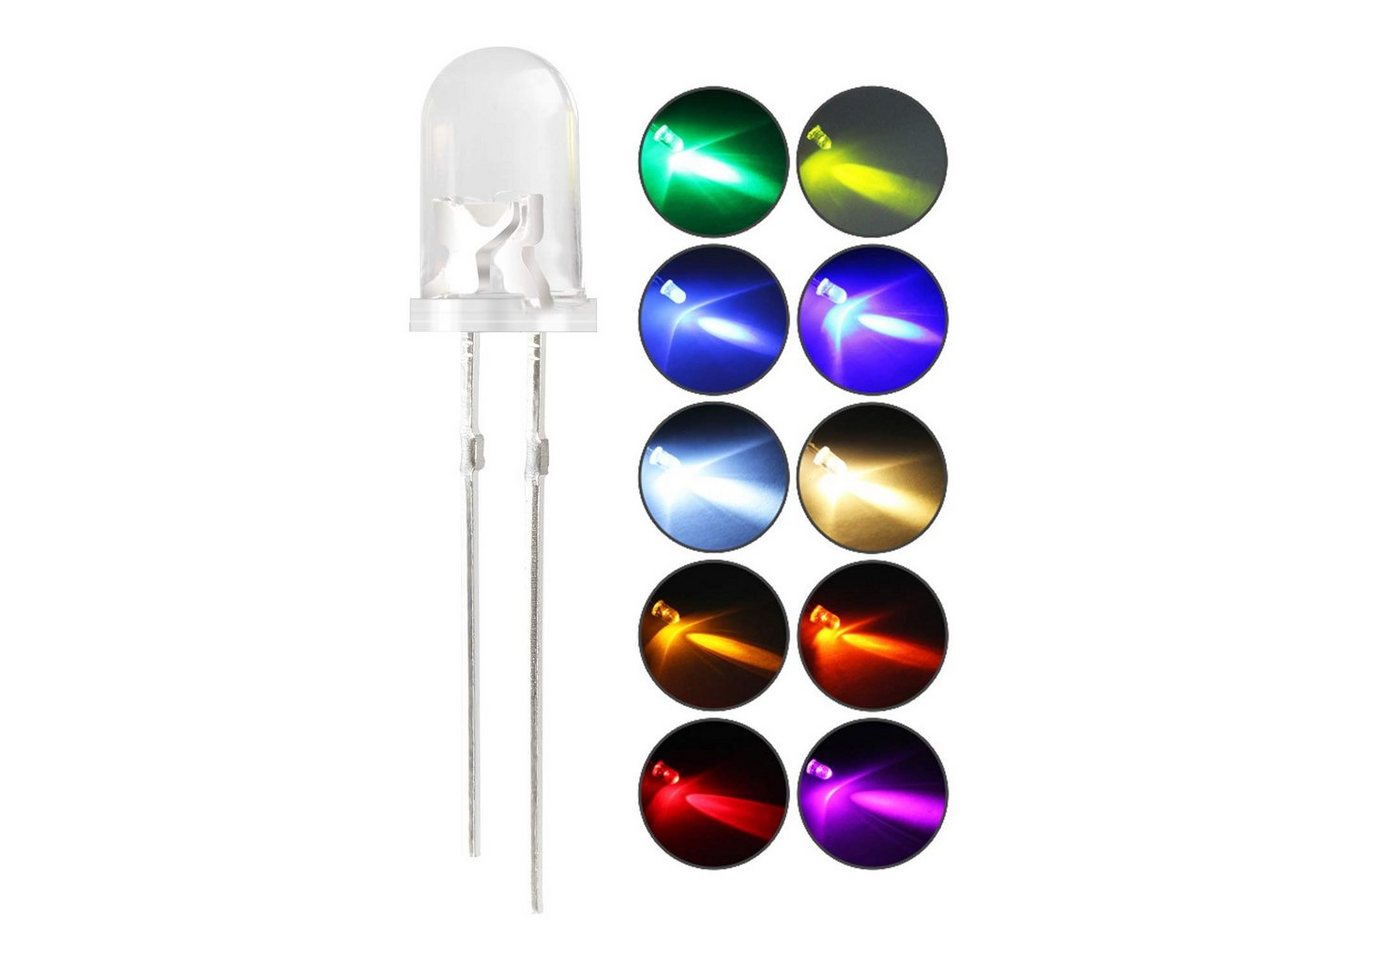 Ogeled LED-Leuchtmittel 3mm, 5mm, LED, Dioden, Leuchtdiode, Lampe, Diodenlichter, Glühbirnen, 10 St., in grün, blau, rot, gelb, orange, weiß, warmweiß, pink, cyan, UV von Ogeled